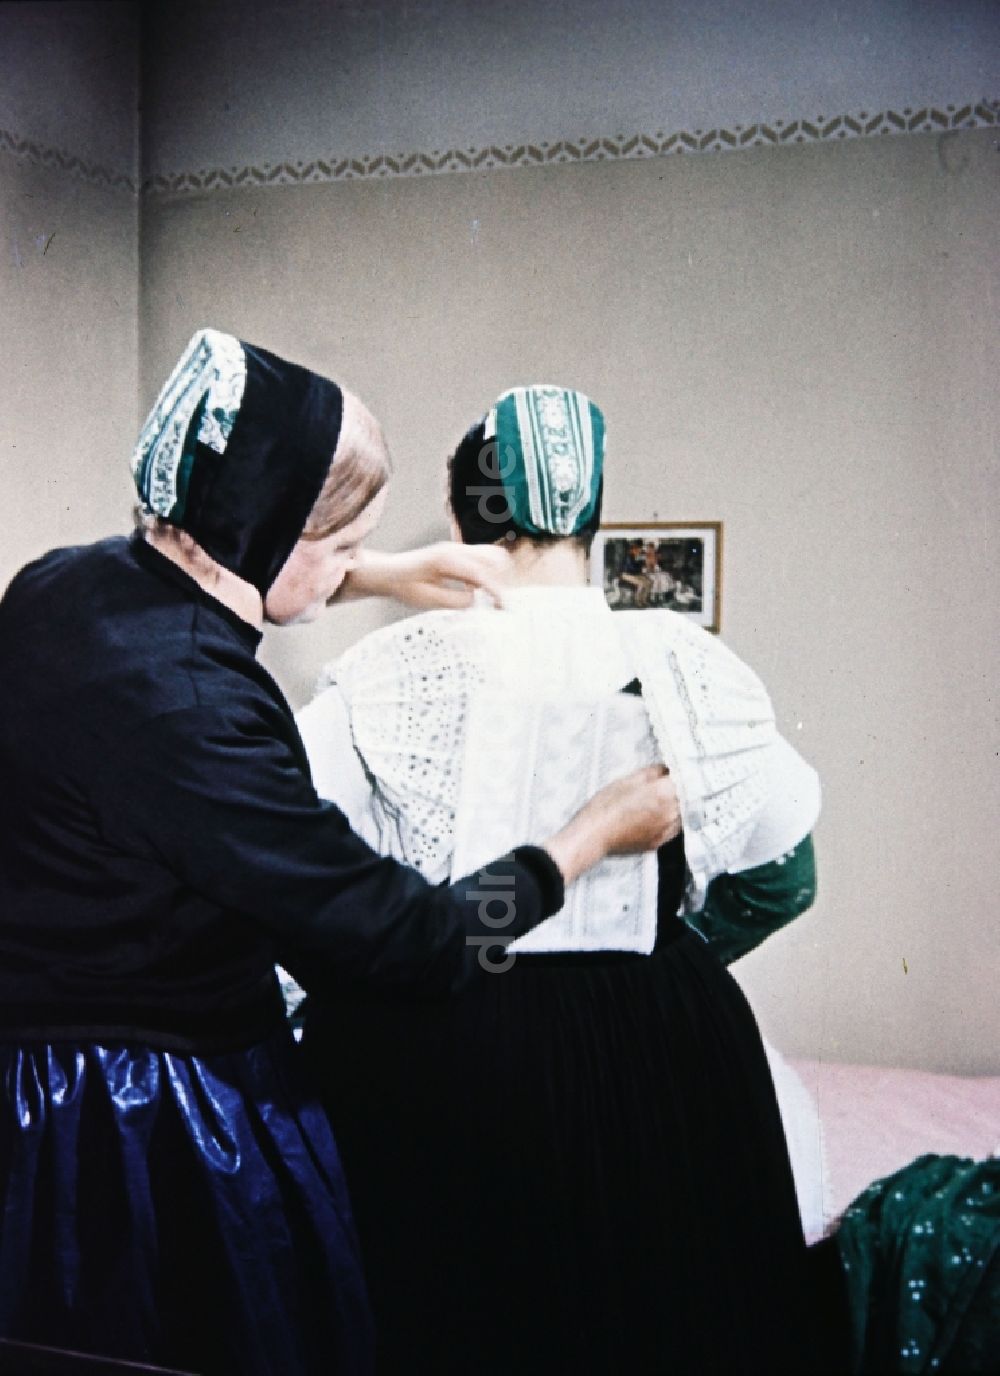 Radibor: Trachten- Kleidung der sorbischen Minderheit in Milkel in Sachsen in der DDR